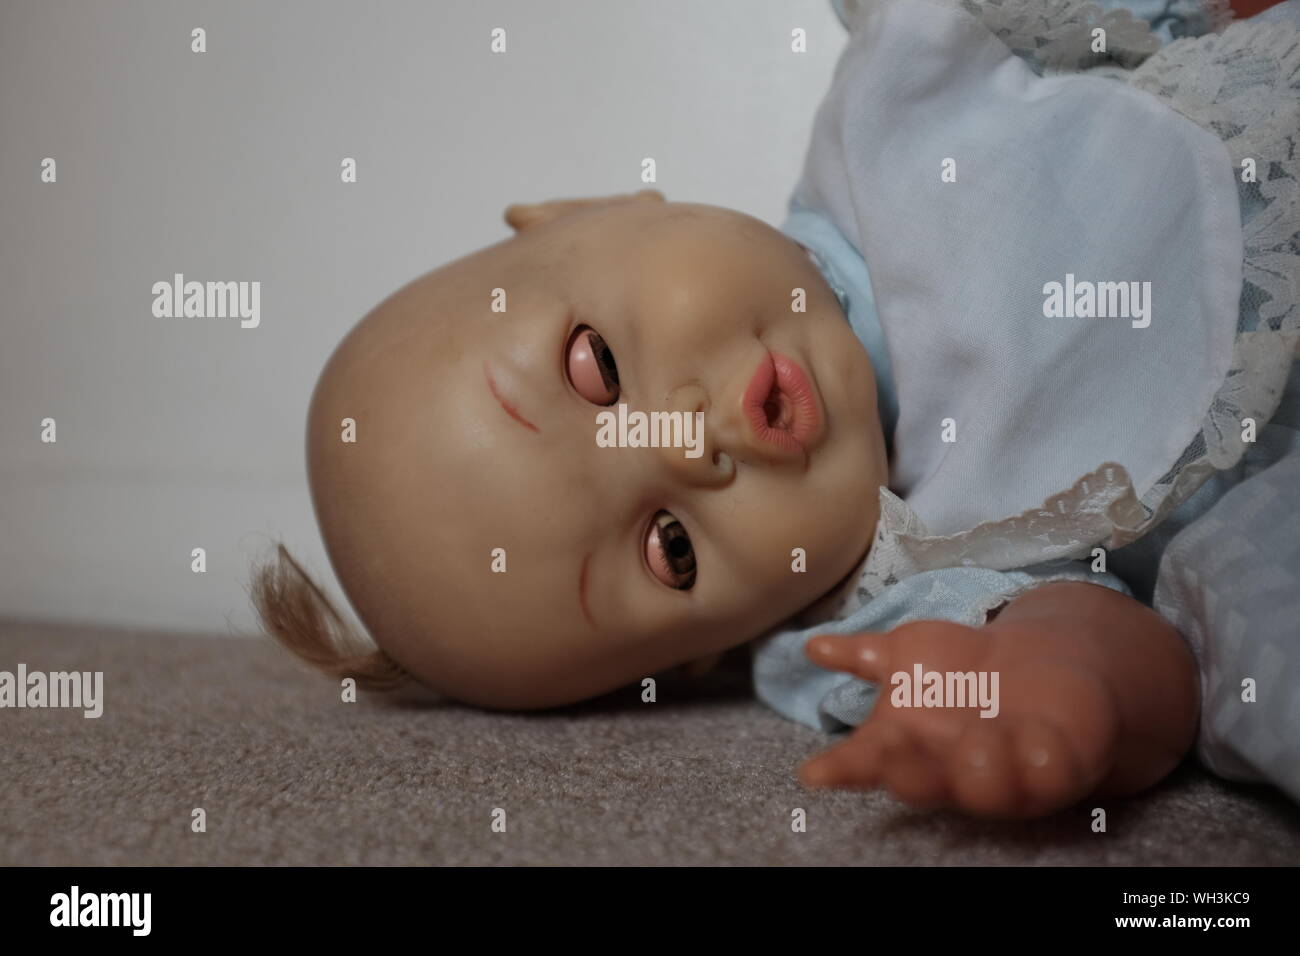 Alt, abgenutzt und schmutzig Spielzeug Puppe mit einer unheimlichen, in der Ecke eines Zimmers liegen. Stockfoto